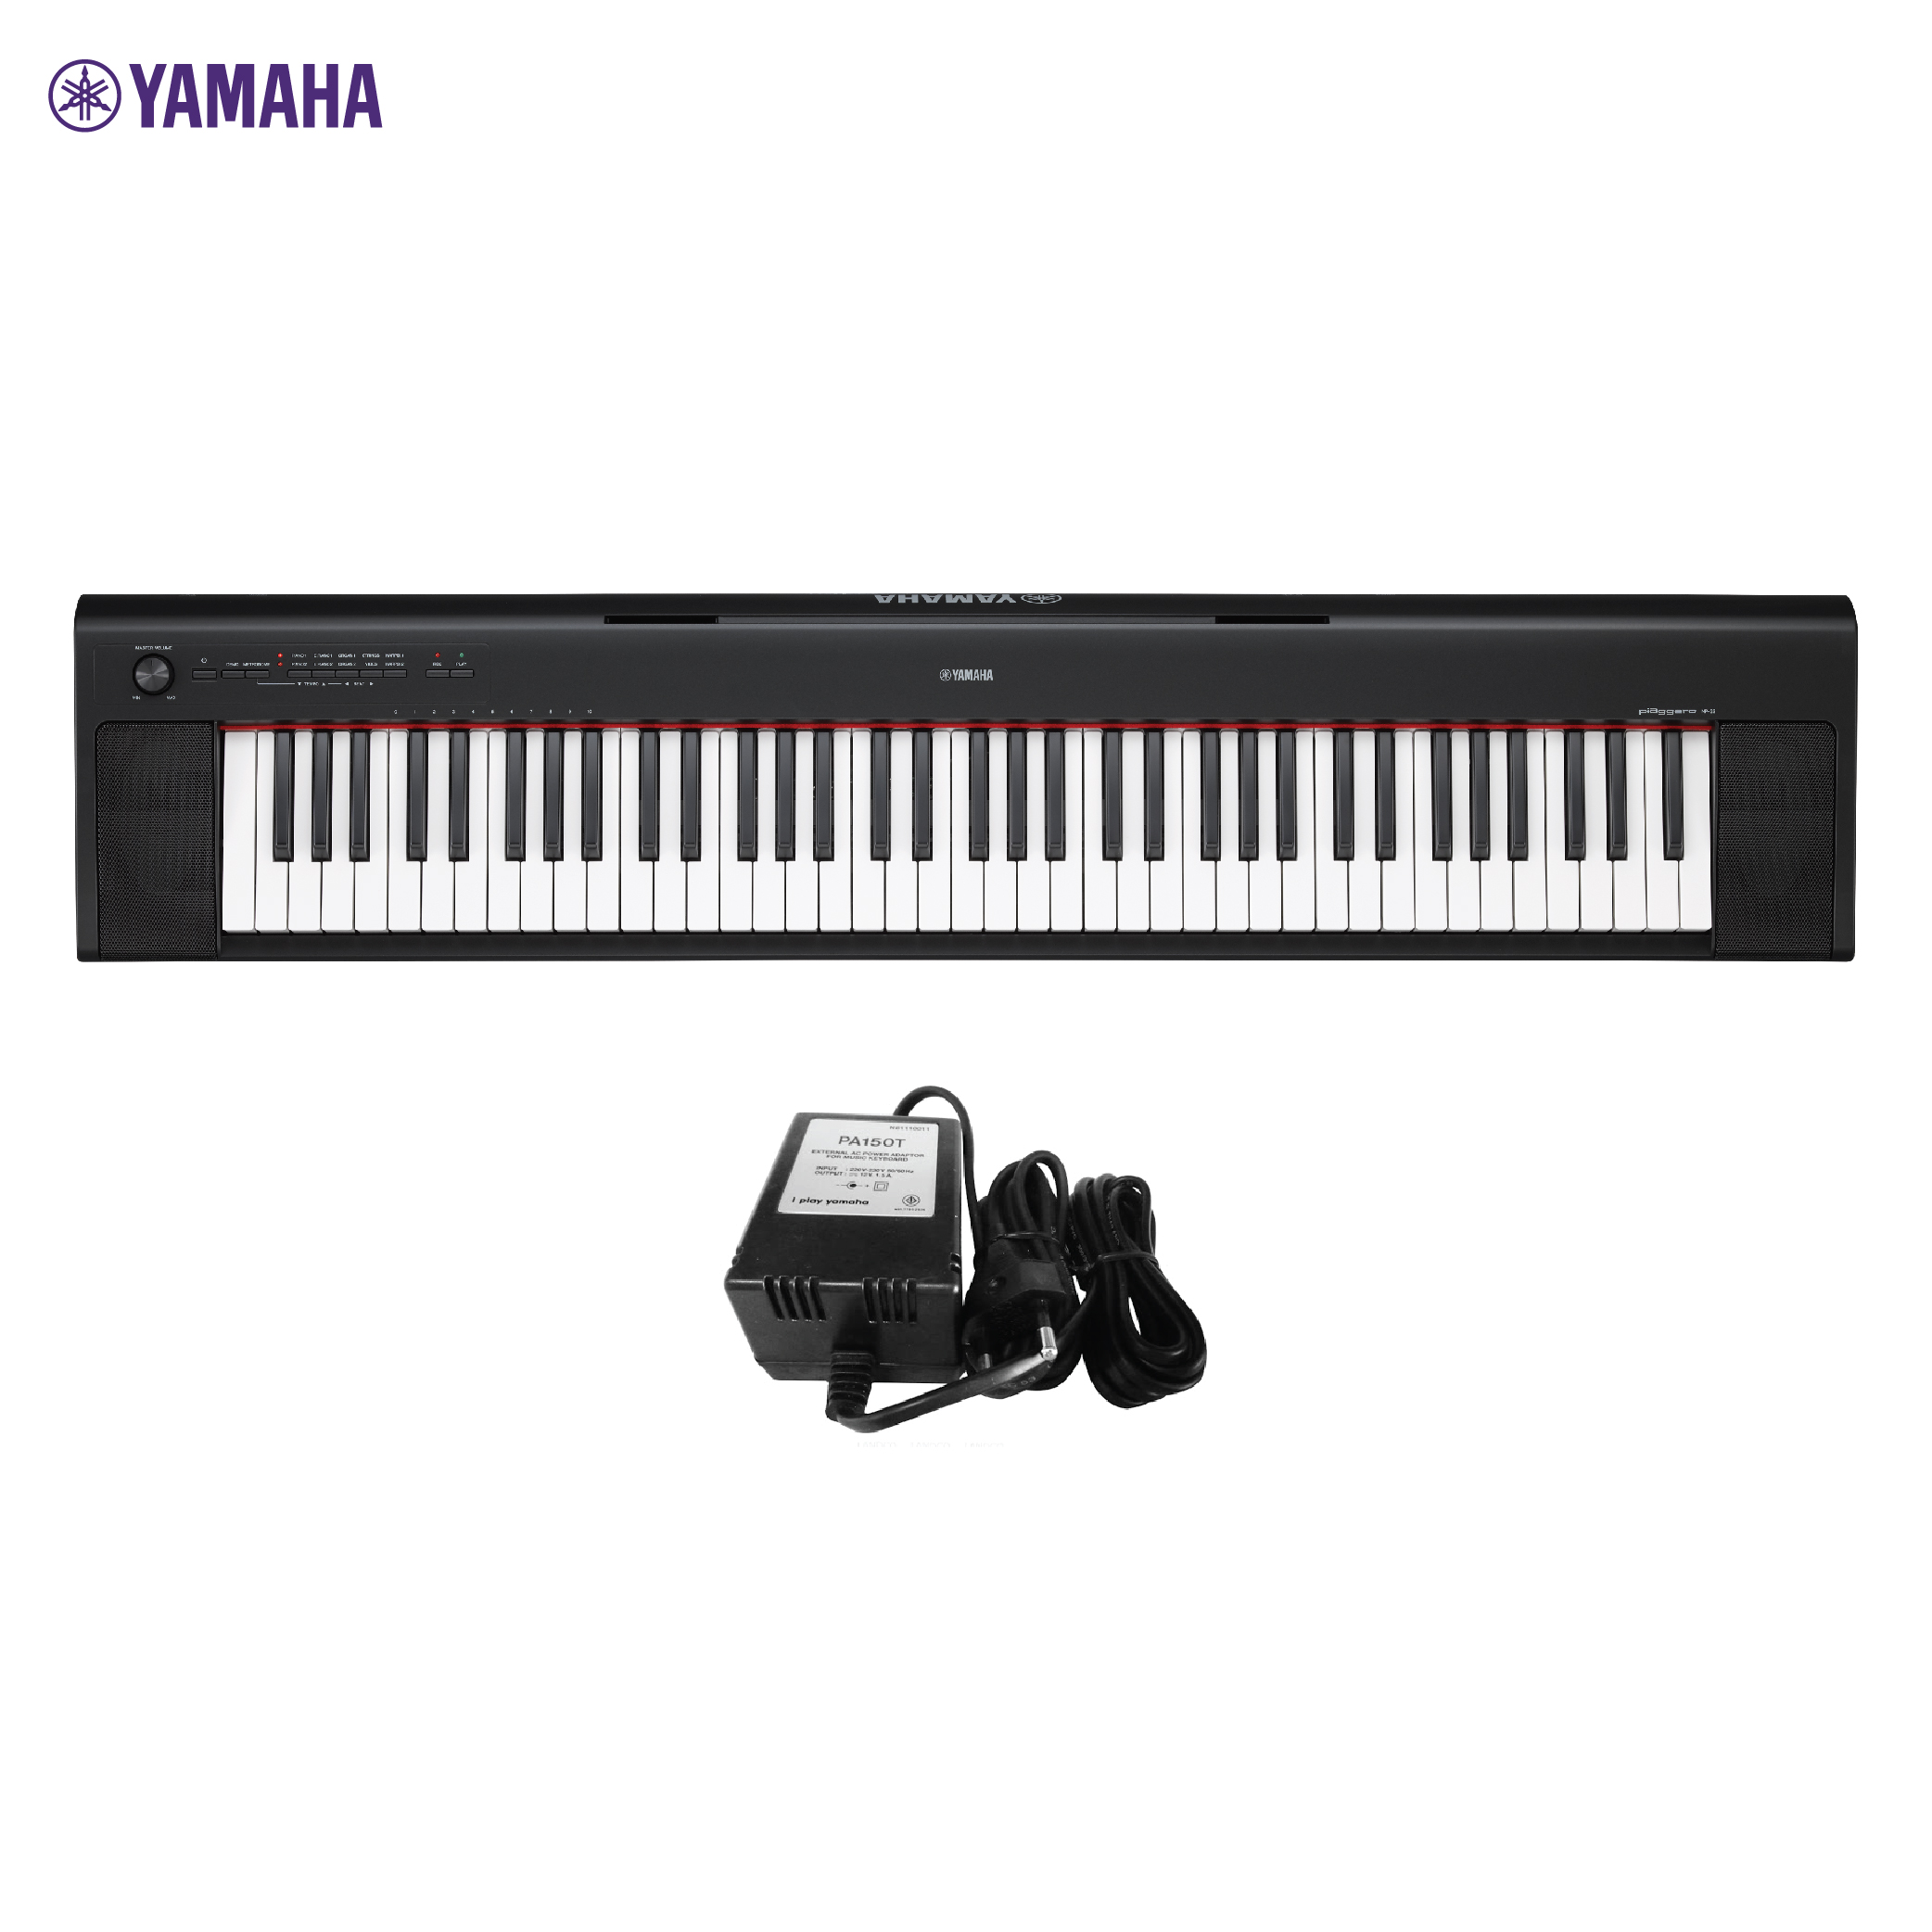 (ส่งทุกวัน) เปียโนไฟฟ้า Yamaha Piaggero NP-32 76key เปียโนดิจิตอล เปียโนพกพา เปียโน ไฟฟ้า 76คีย์ yamaha np-32